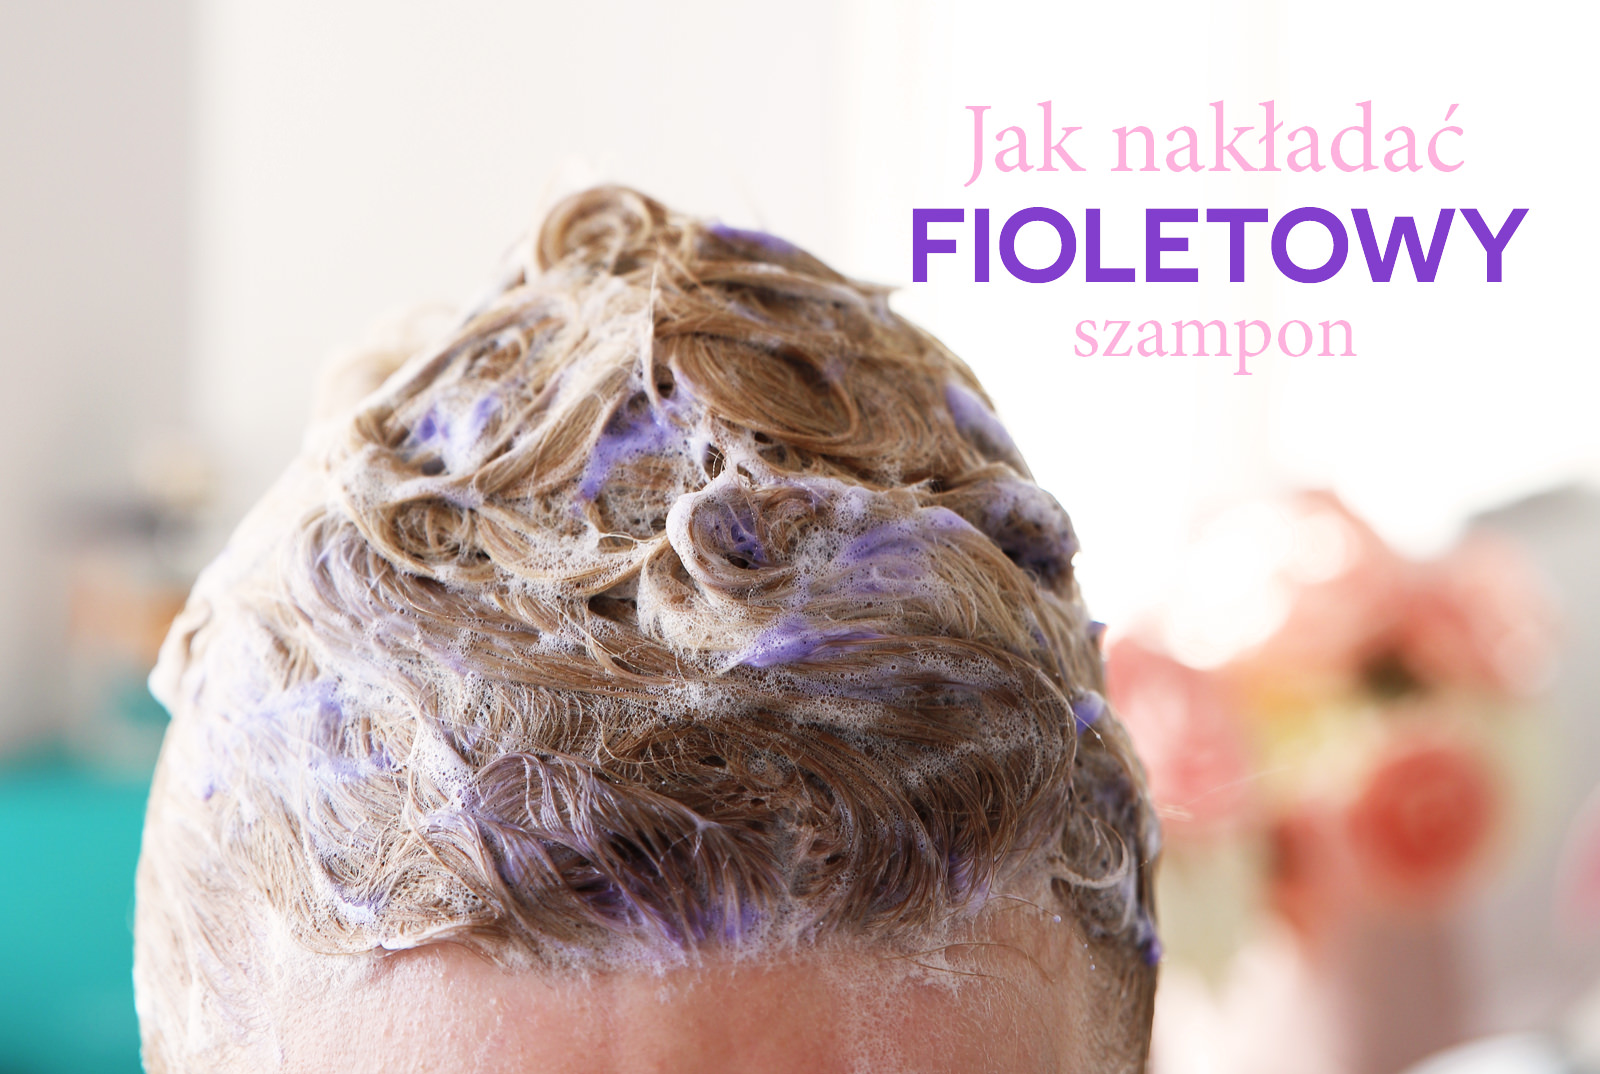 fioletowy szampon jak używać